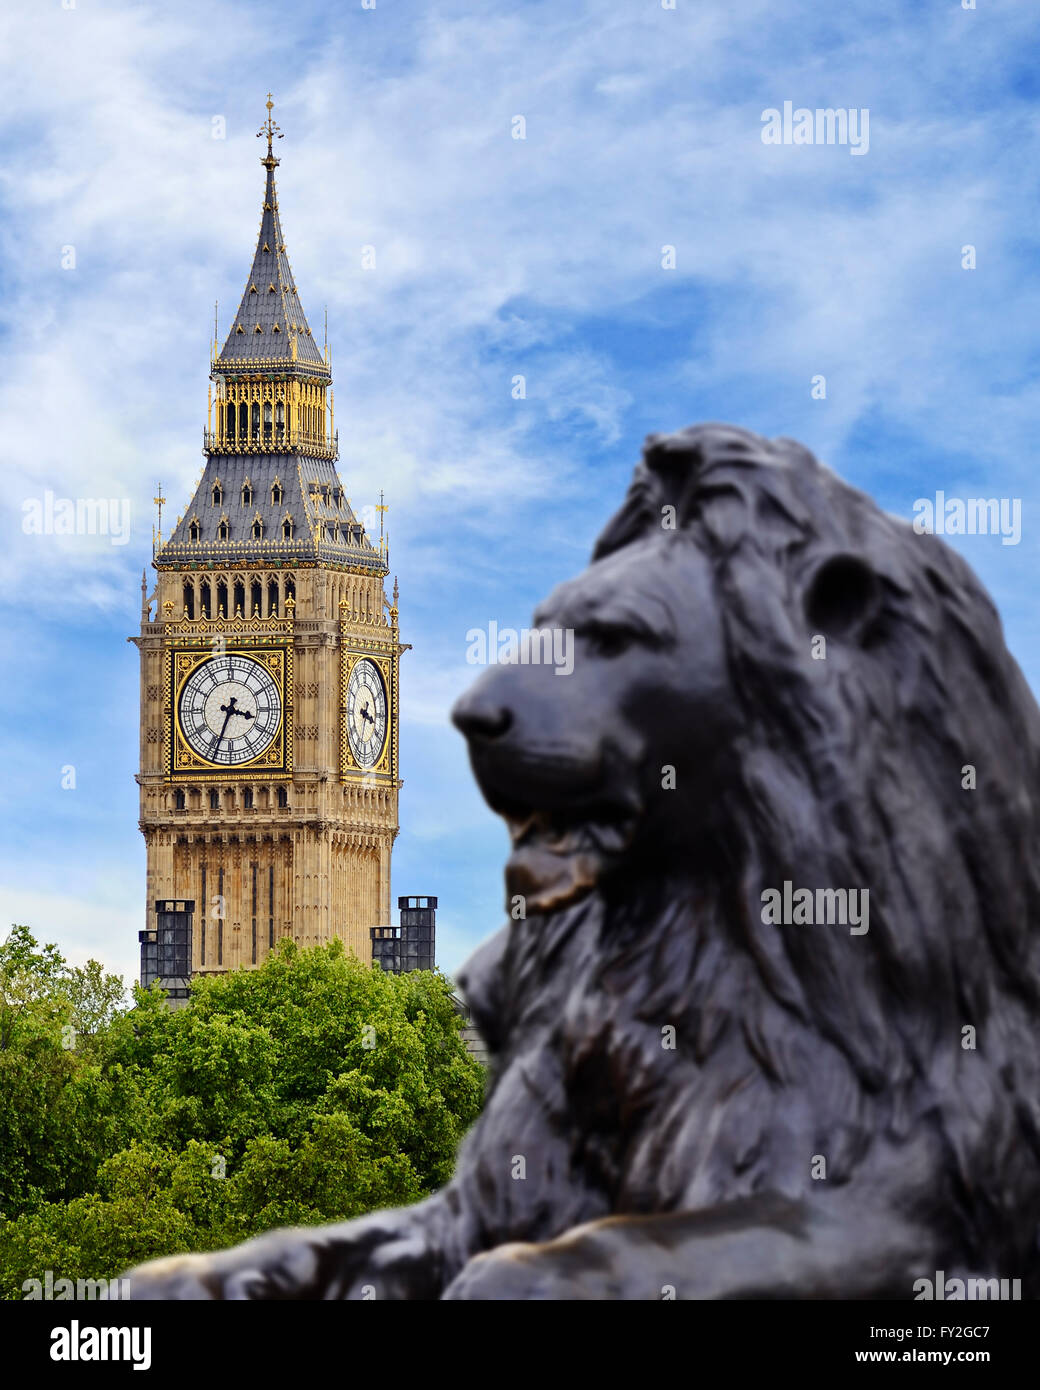 Big Ben Viewed from Trafalgar Square, London, England, UK. Stock Photo